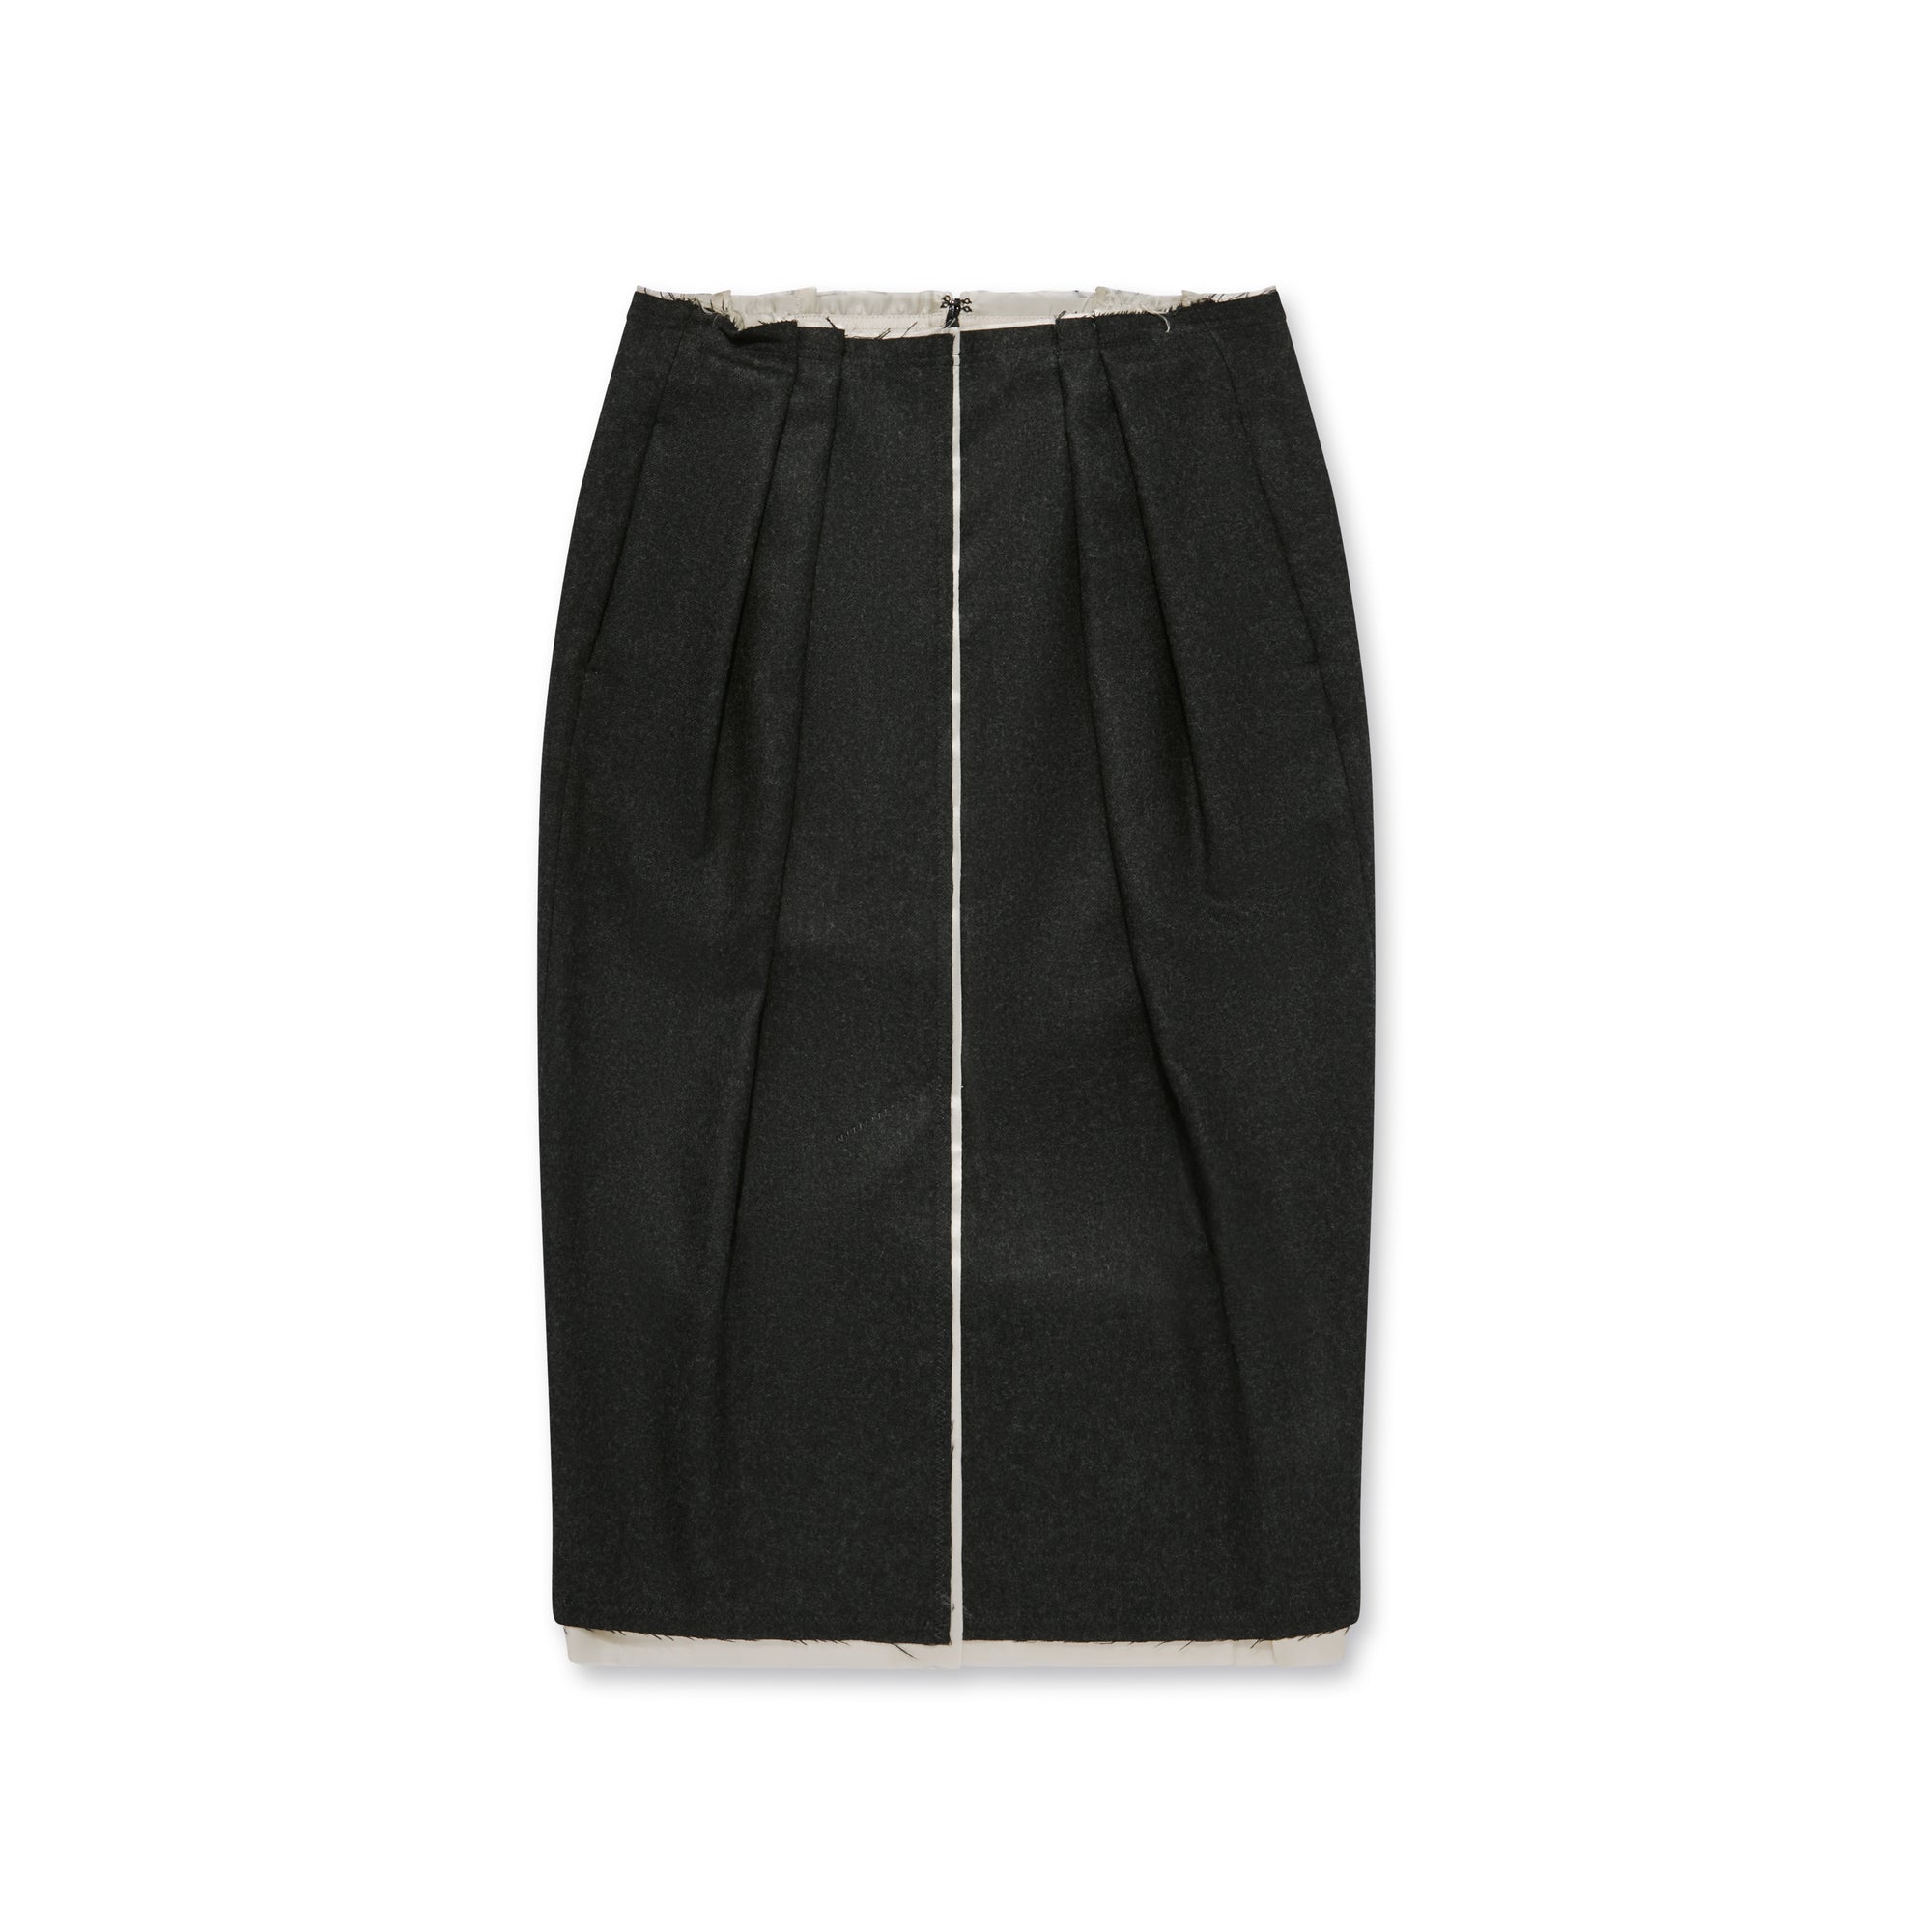 Dries Van Noten - Women’s Front Slit Skirt - (Anthracite) view 1